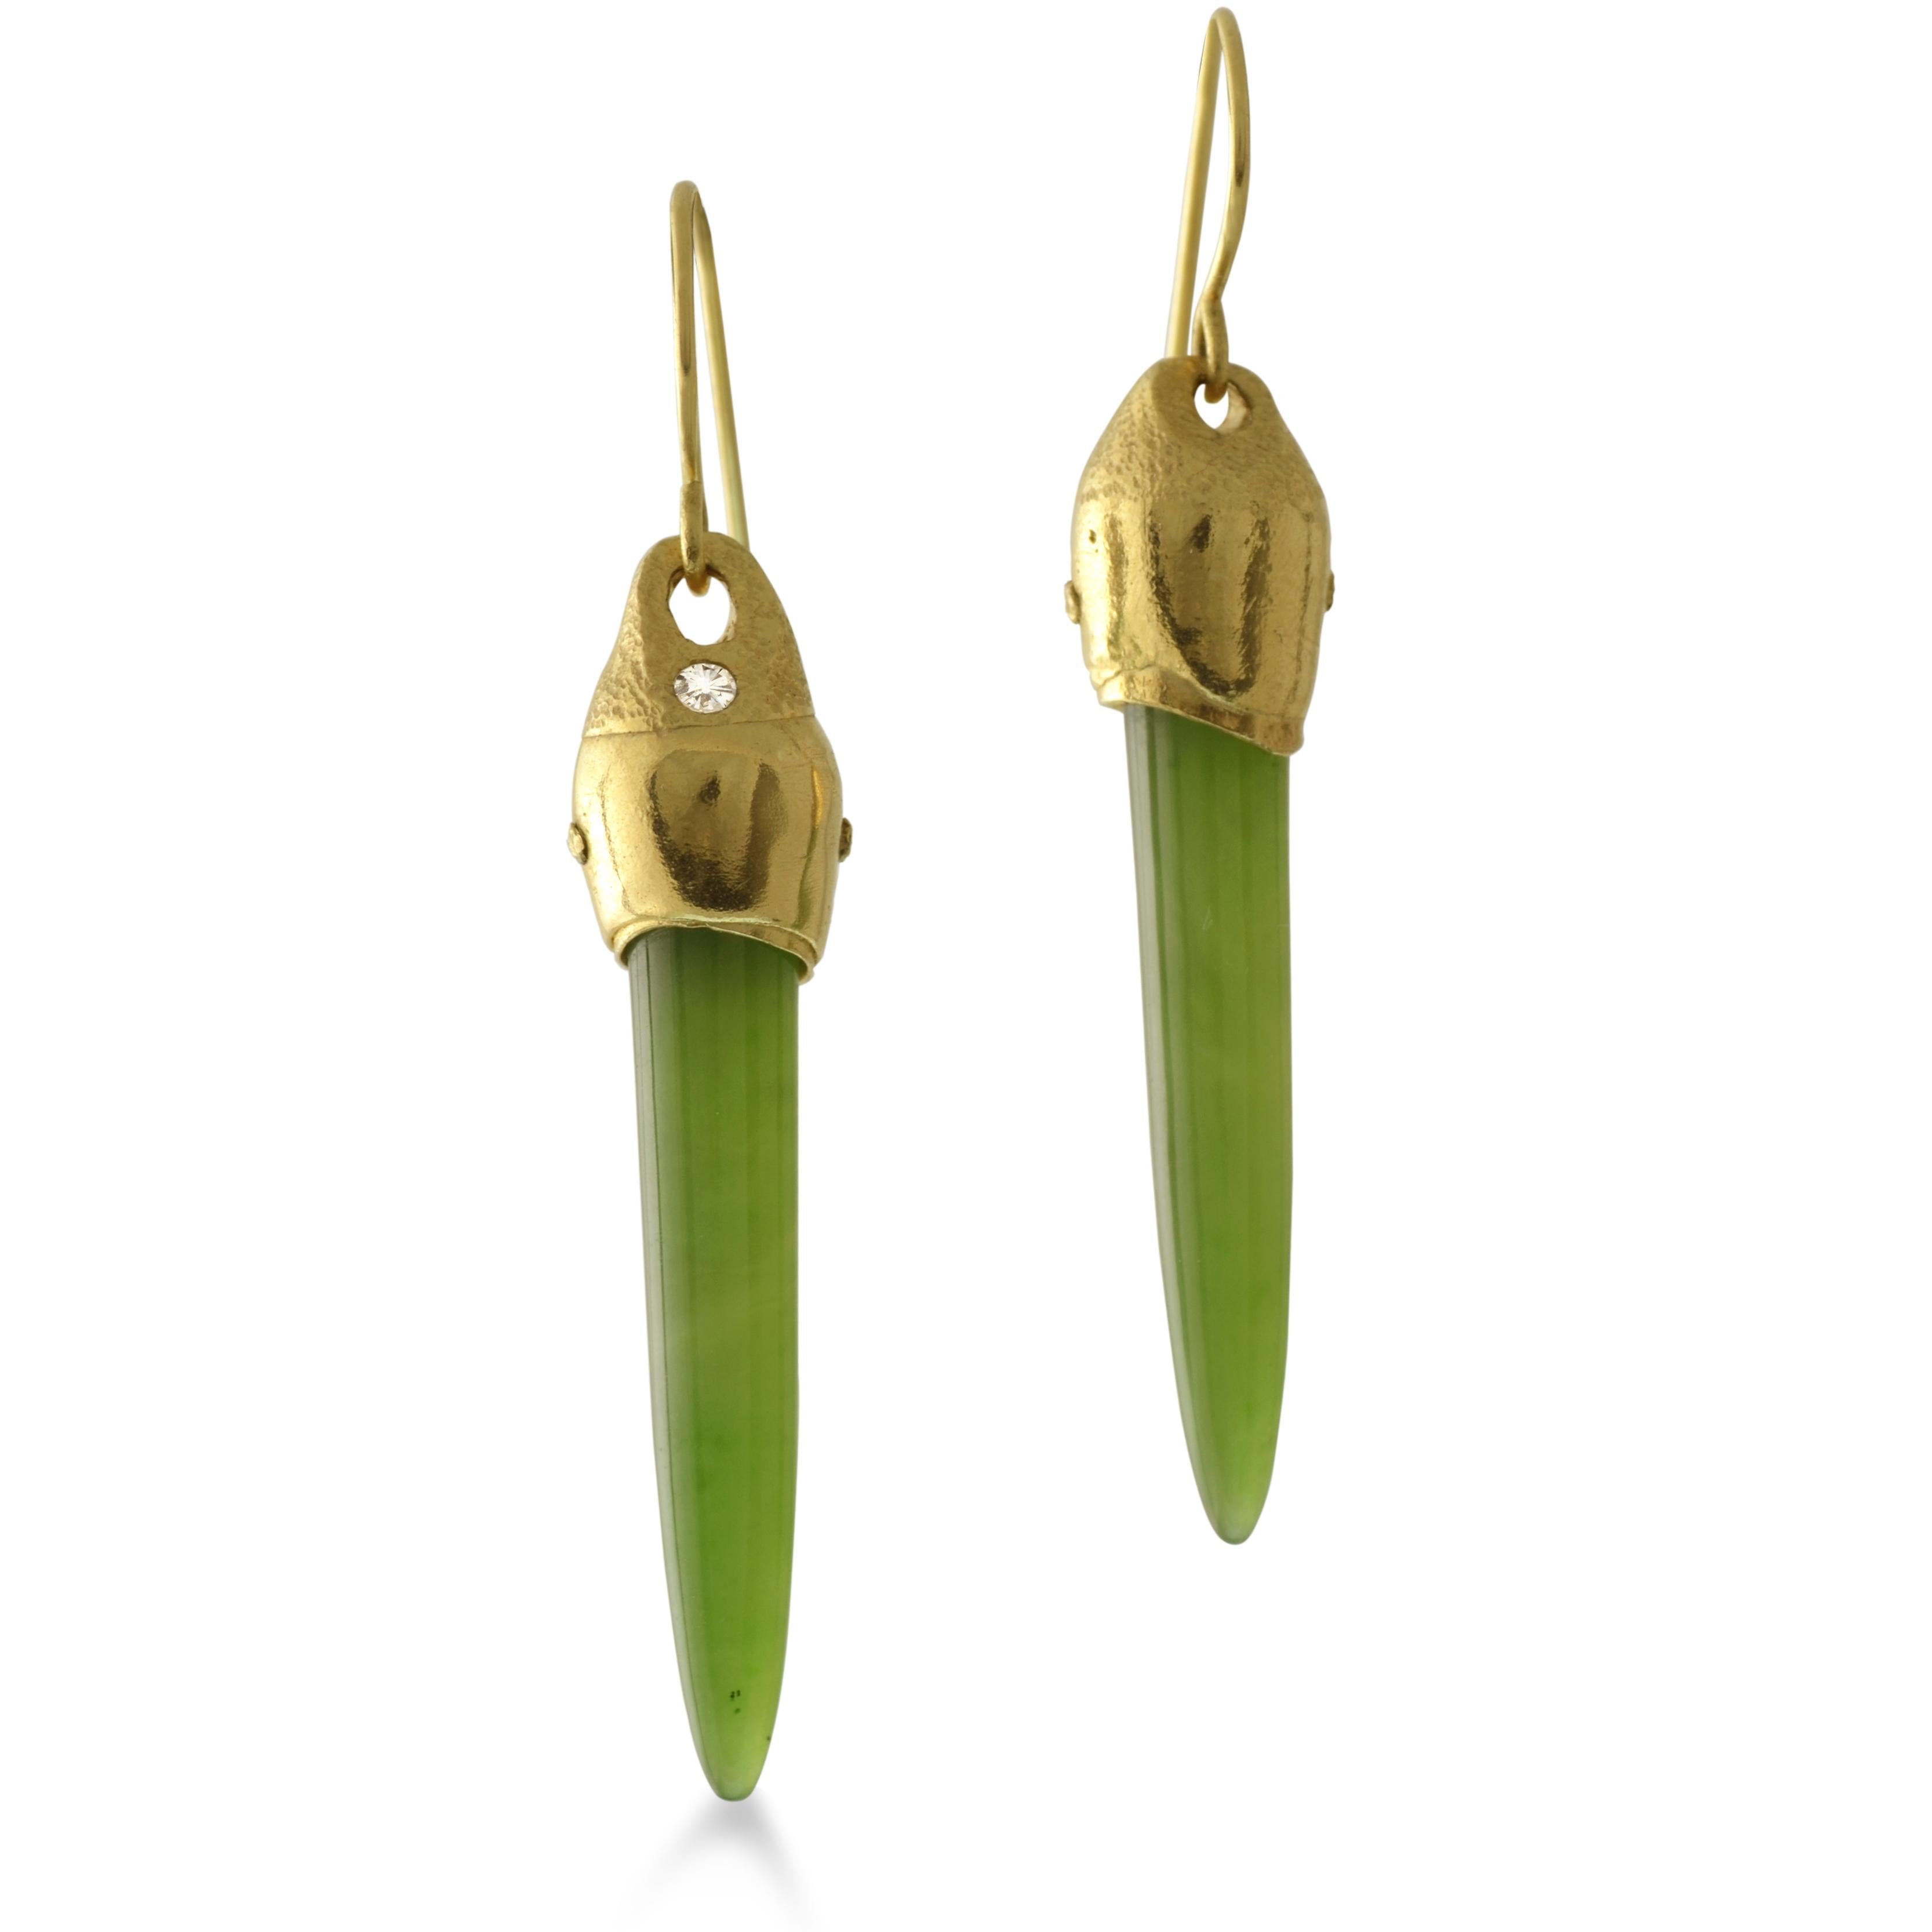 Langgestreckte, elegante Nephrite sind in unsere einzigartigen Ohrringe aus 18-karätigem Gelbgold eingenietet. Inspiriert durch die Texturen von Rinde und kompostierten Waldböden. 

Diese in Arizona abgebauten und geschliffenen edelsteingrünen